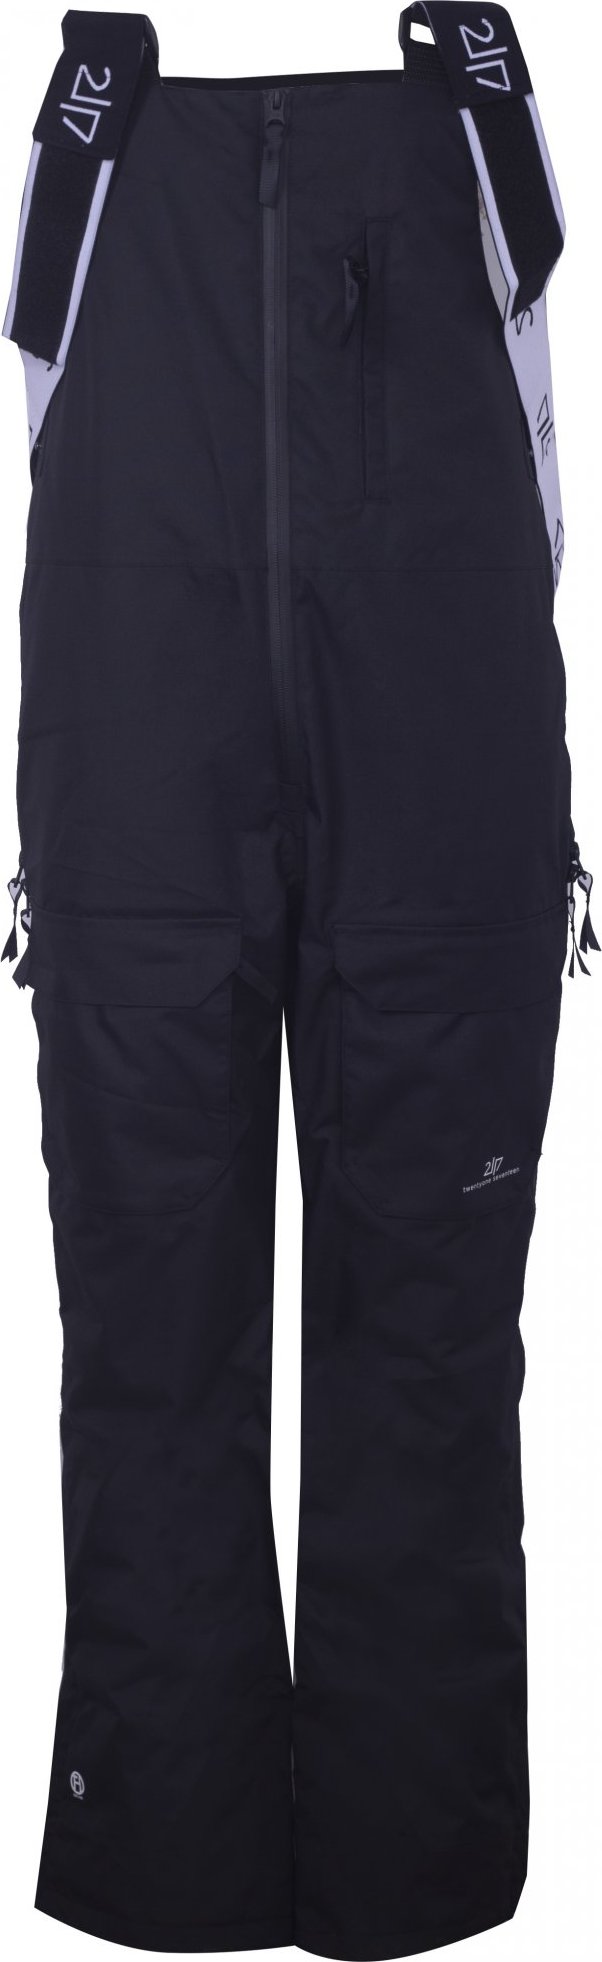 Dámské lyžařské kalhoty s náprsenkou 2117 Backa Eco černá Velikost: XS